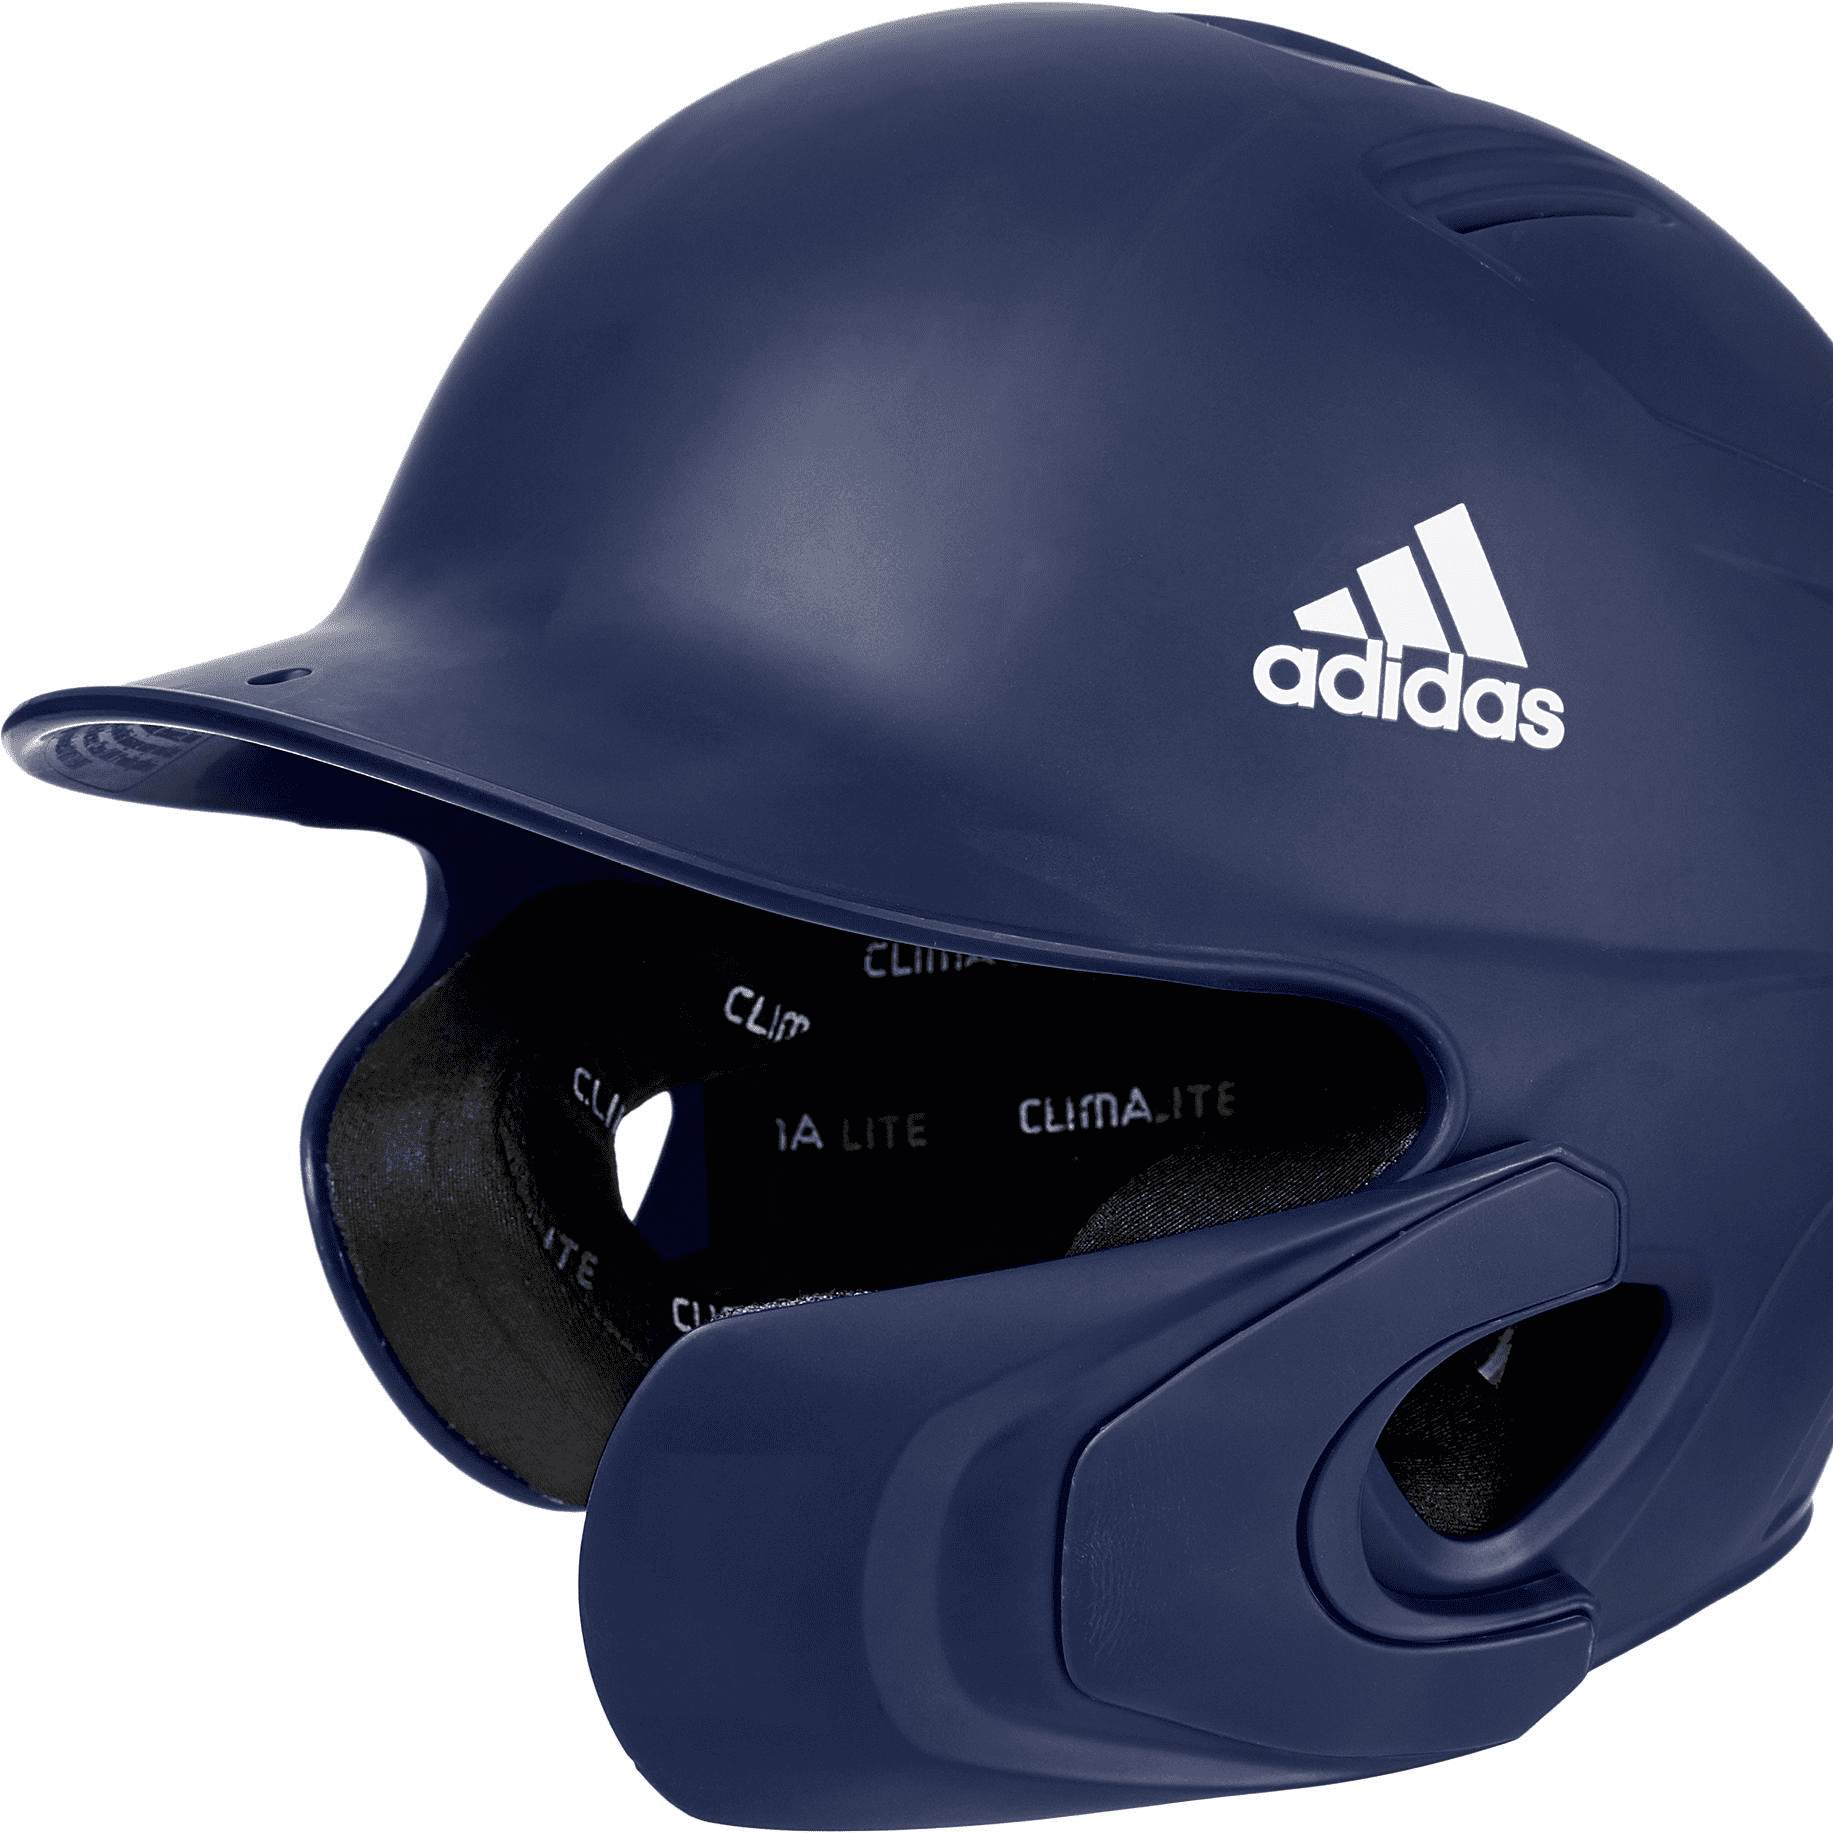 adidas adjustable batting helmet